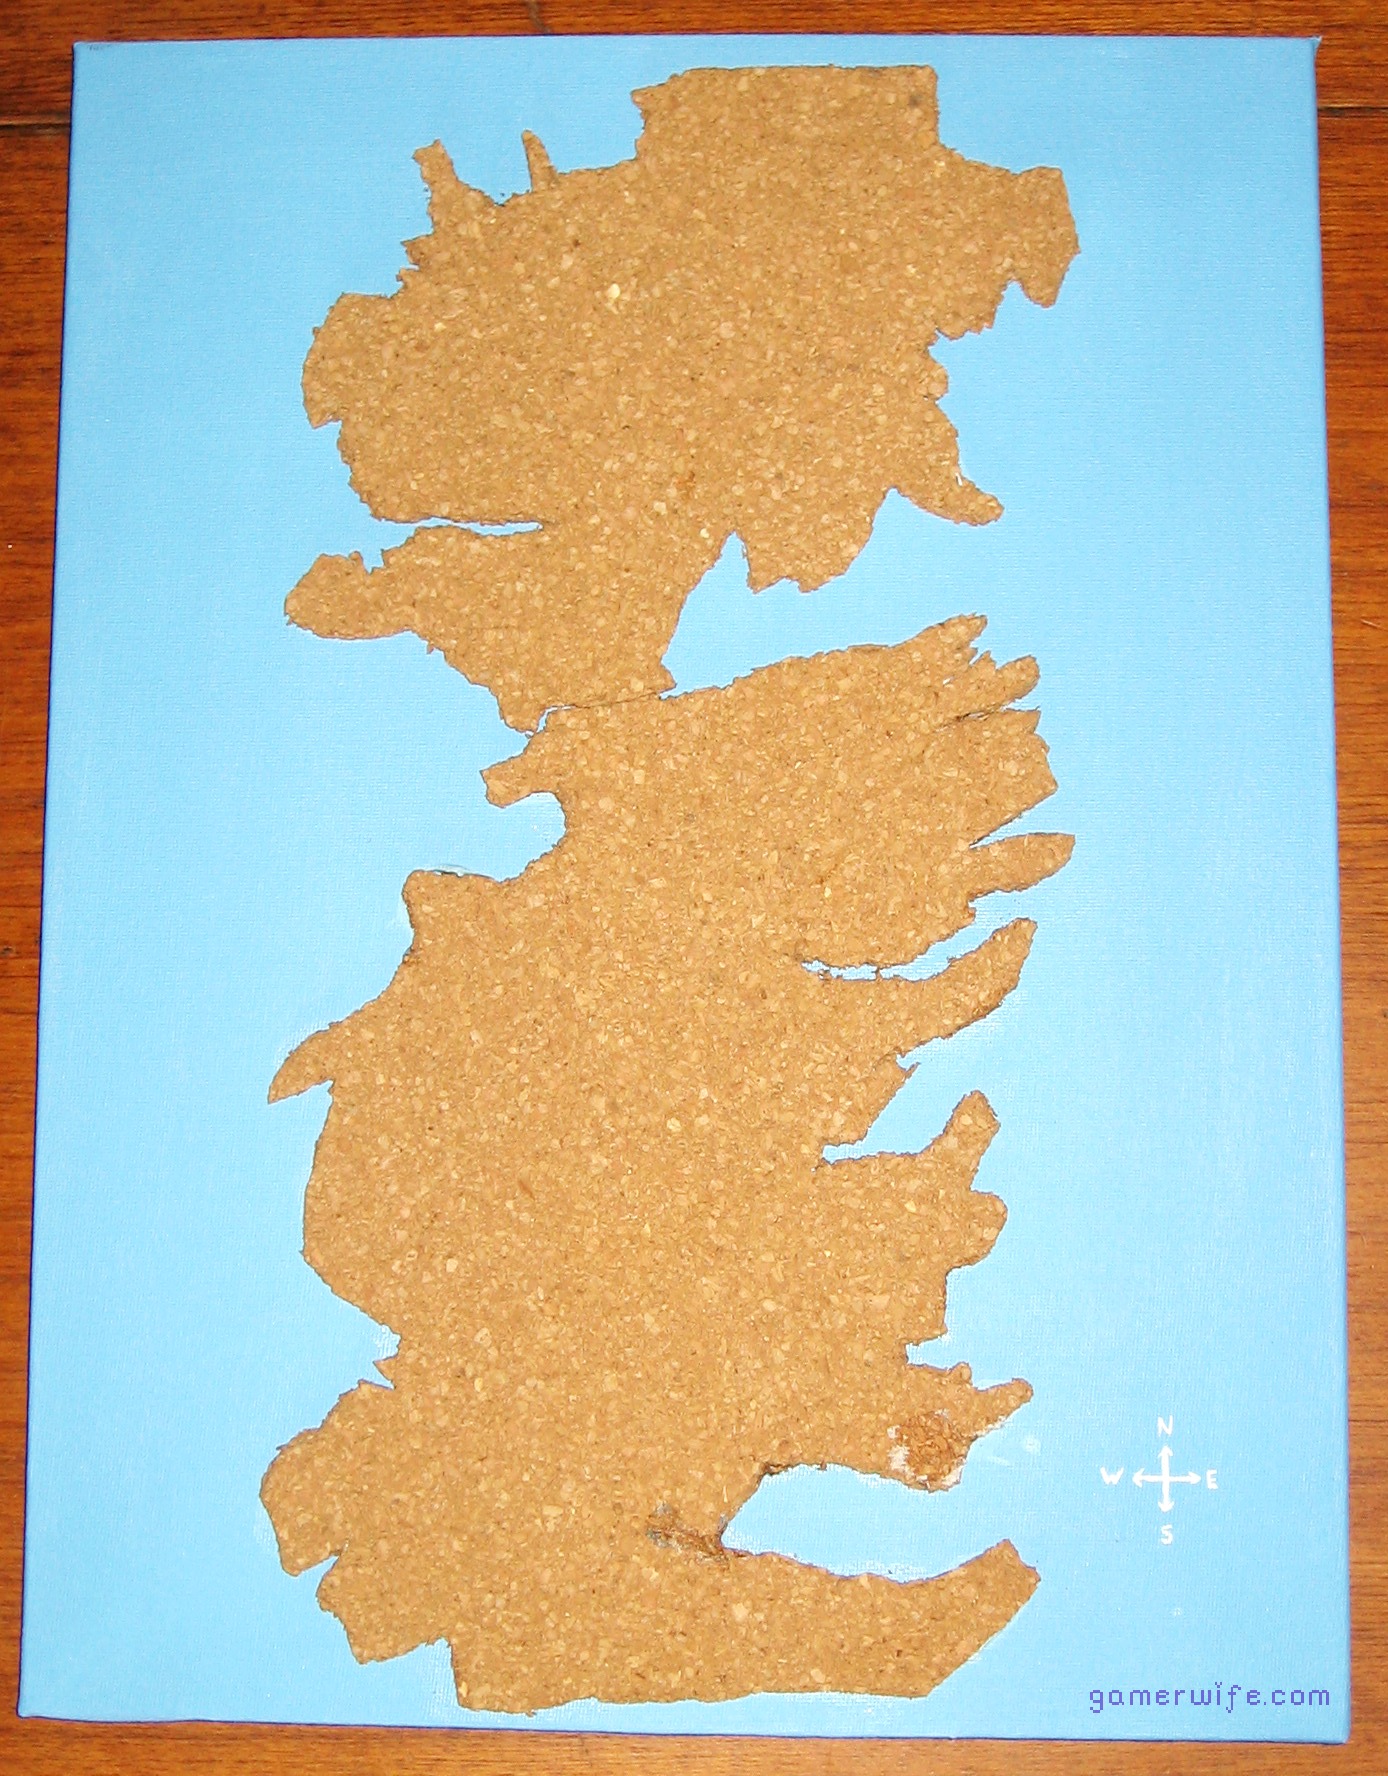 DIY cork map of Westeros for wall decor (via gamerwife.com)